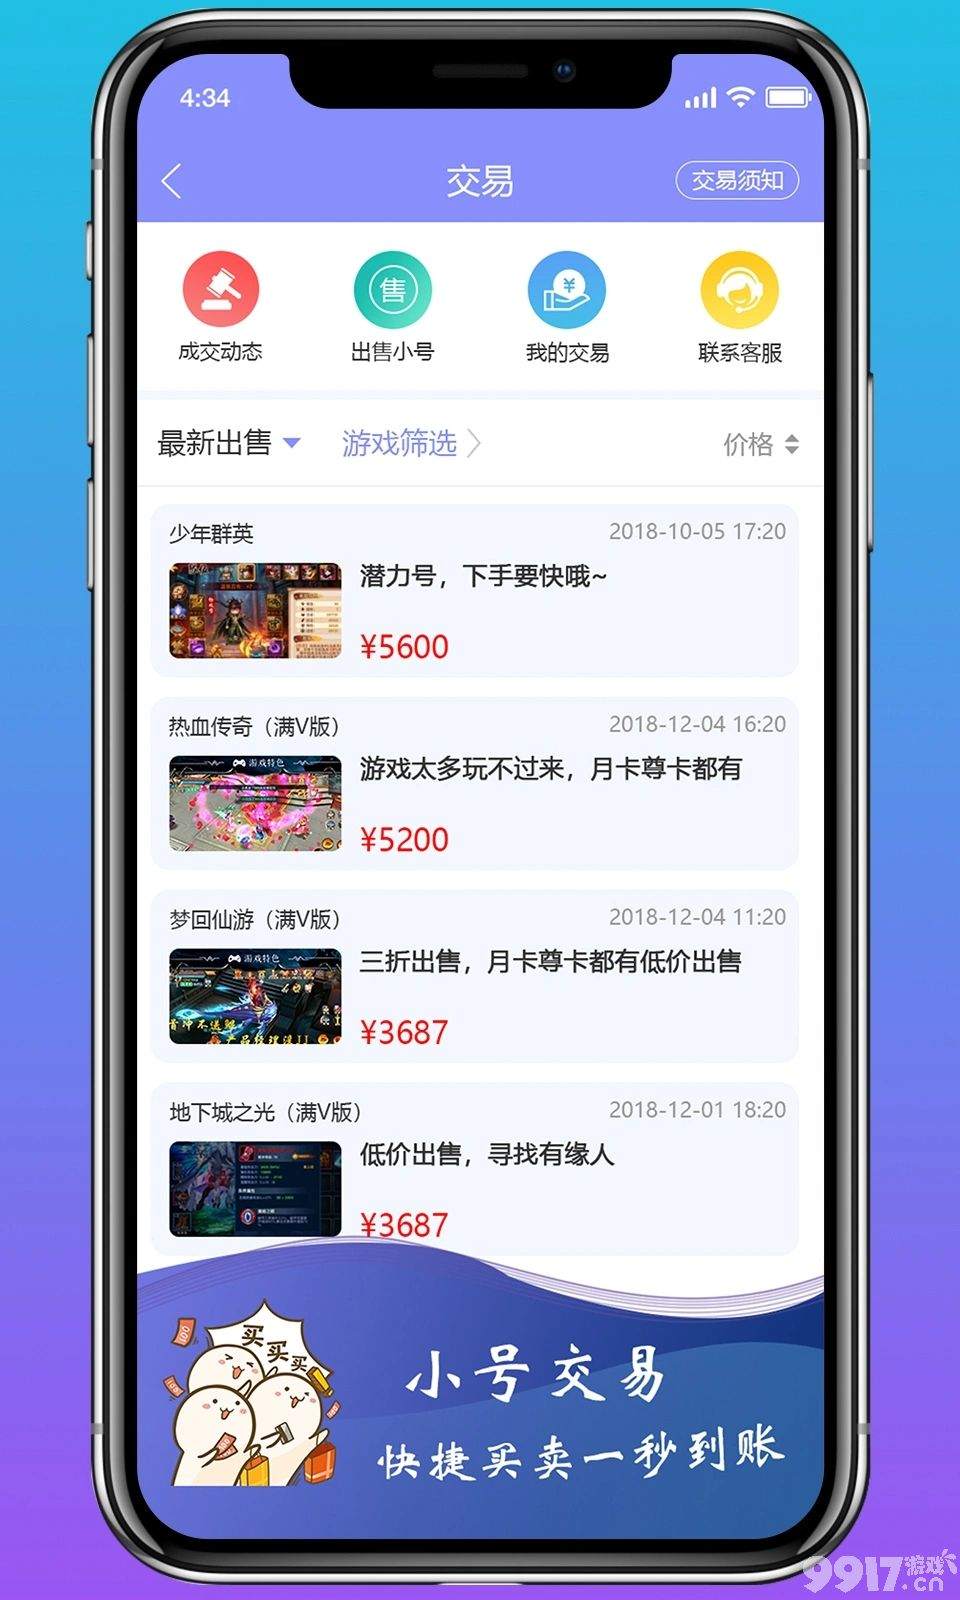 0氪手游平台app排名-嗨玩游戏官方下载-上线送648真充-无限元宝钻石